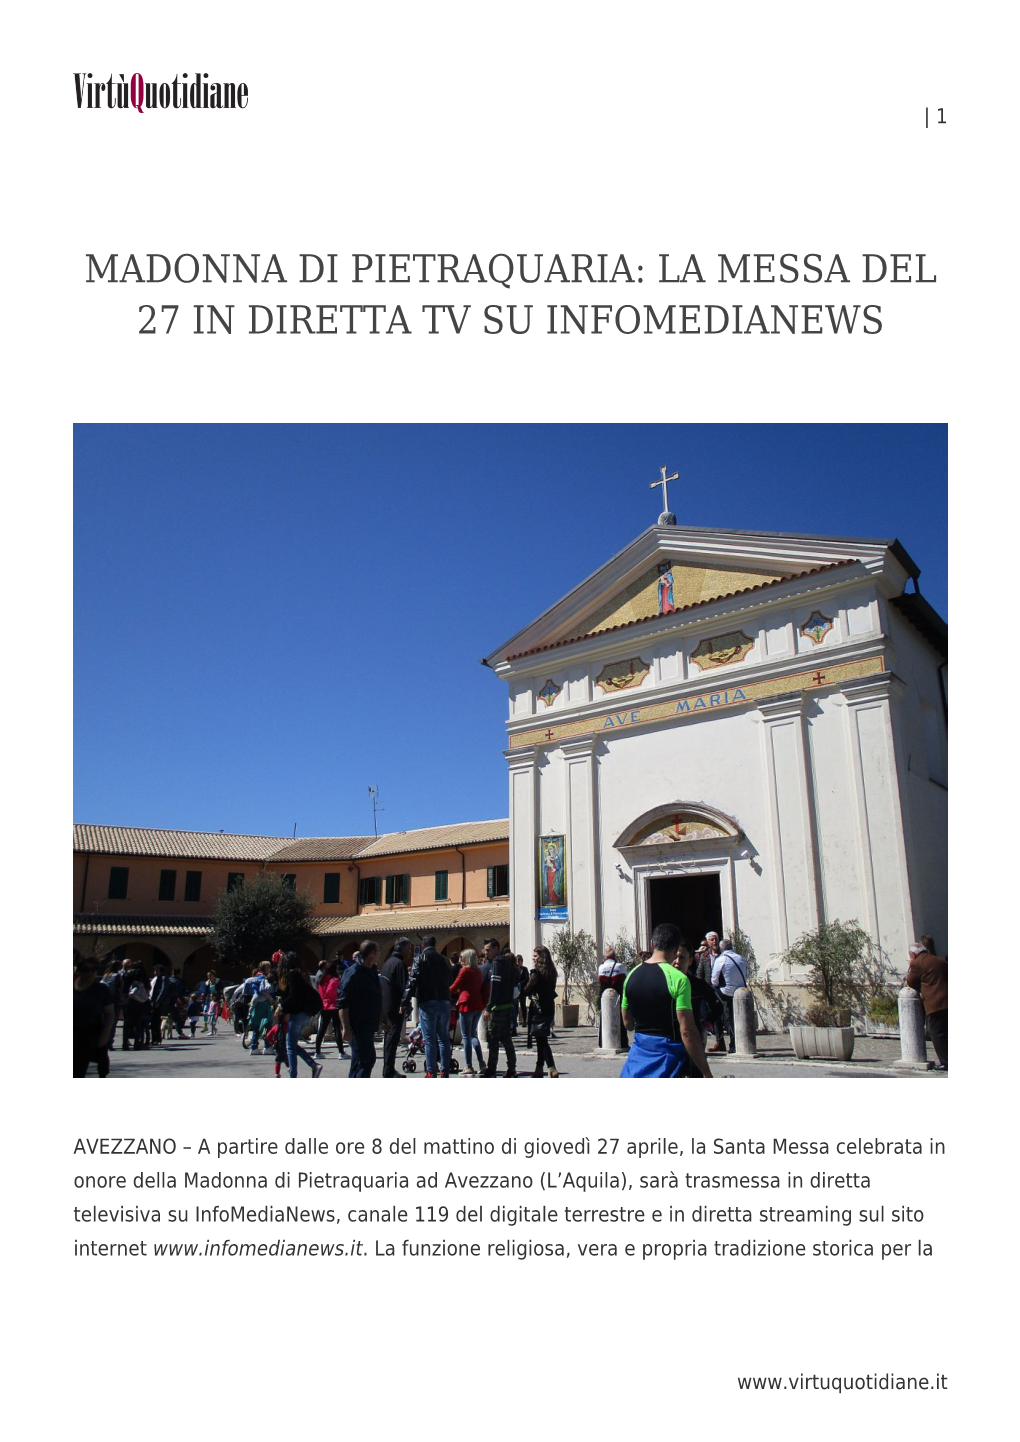 Madonna Di Pietraquaria: La Messa Del 27 in Diretta Tv Su Infomedianews